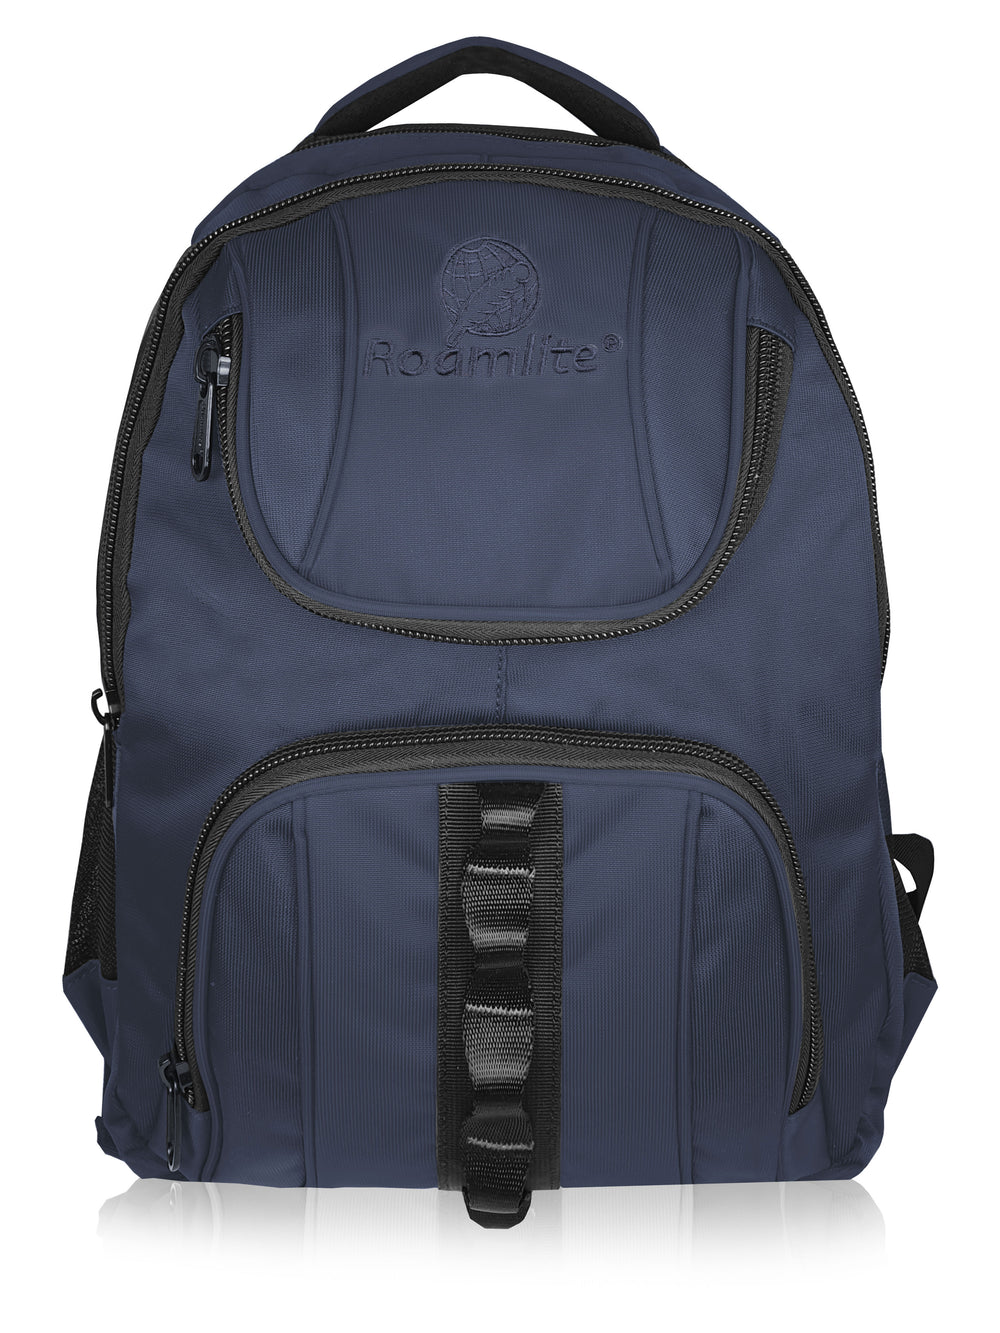 Roamlite School Backpack Navy Polyester RL18 front